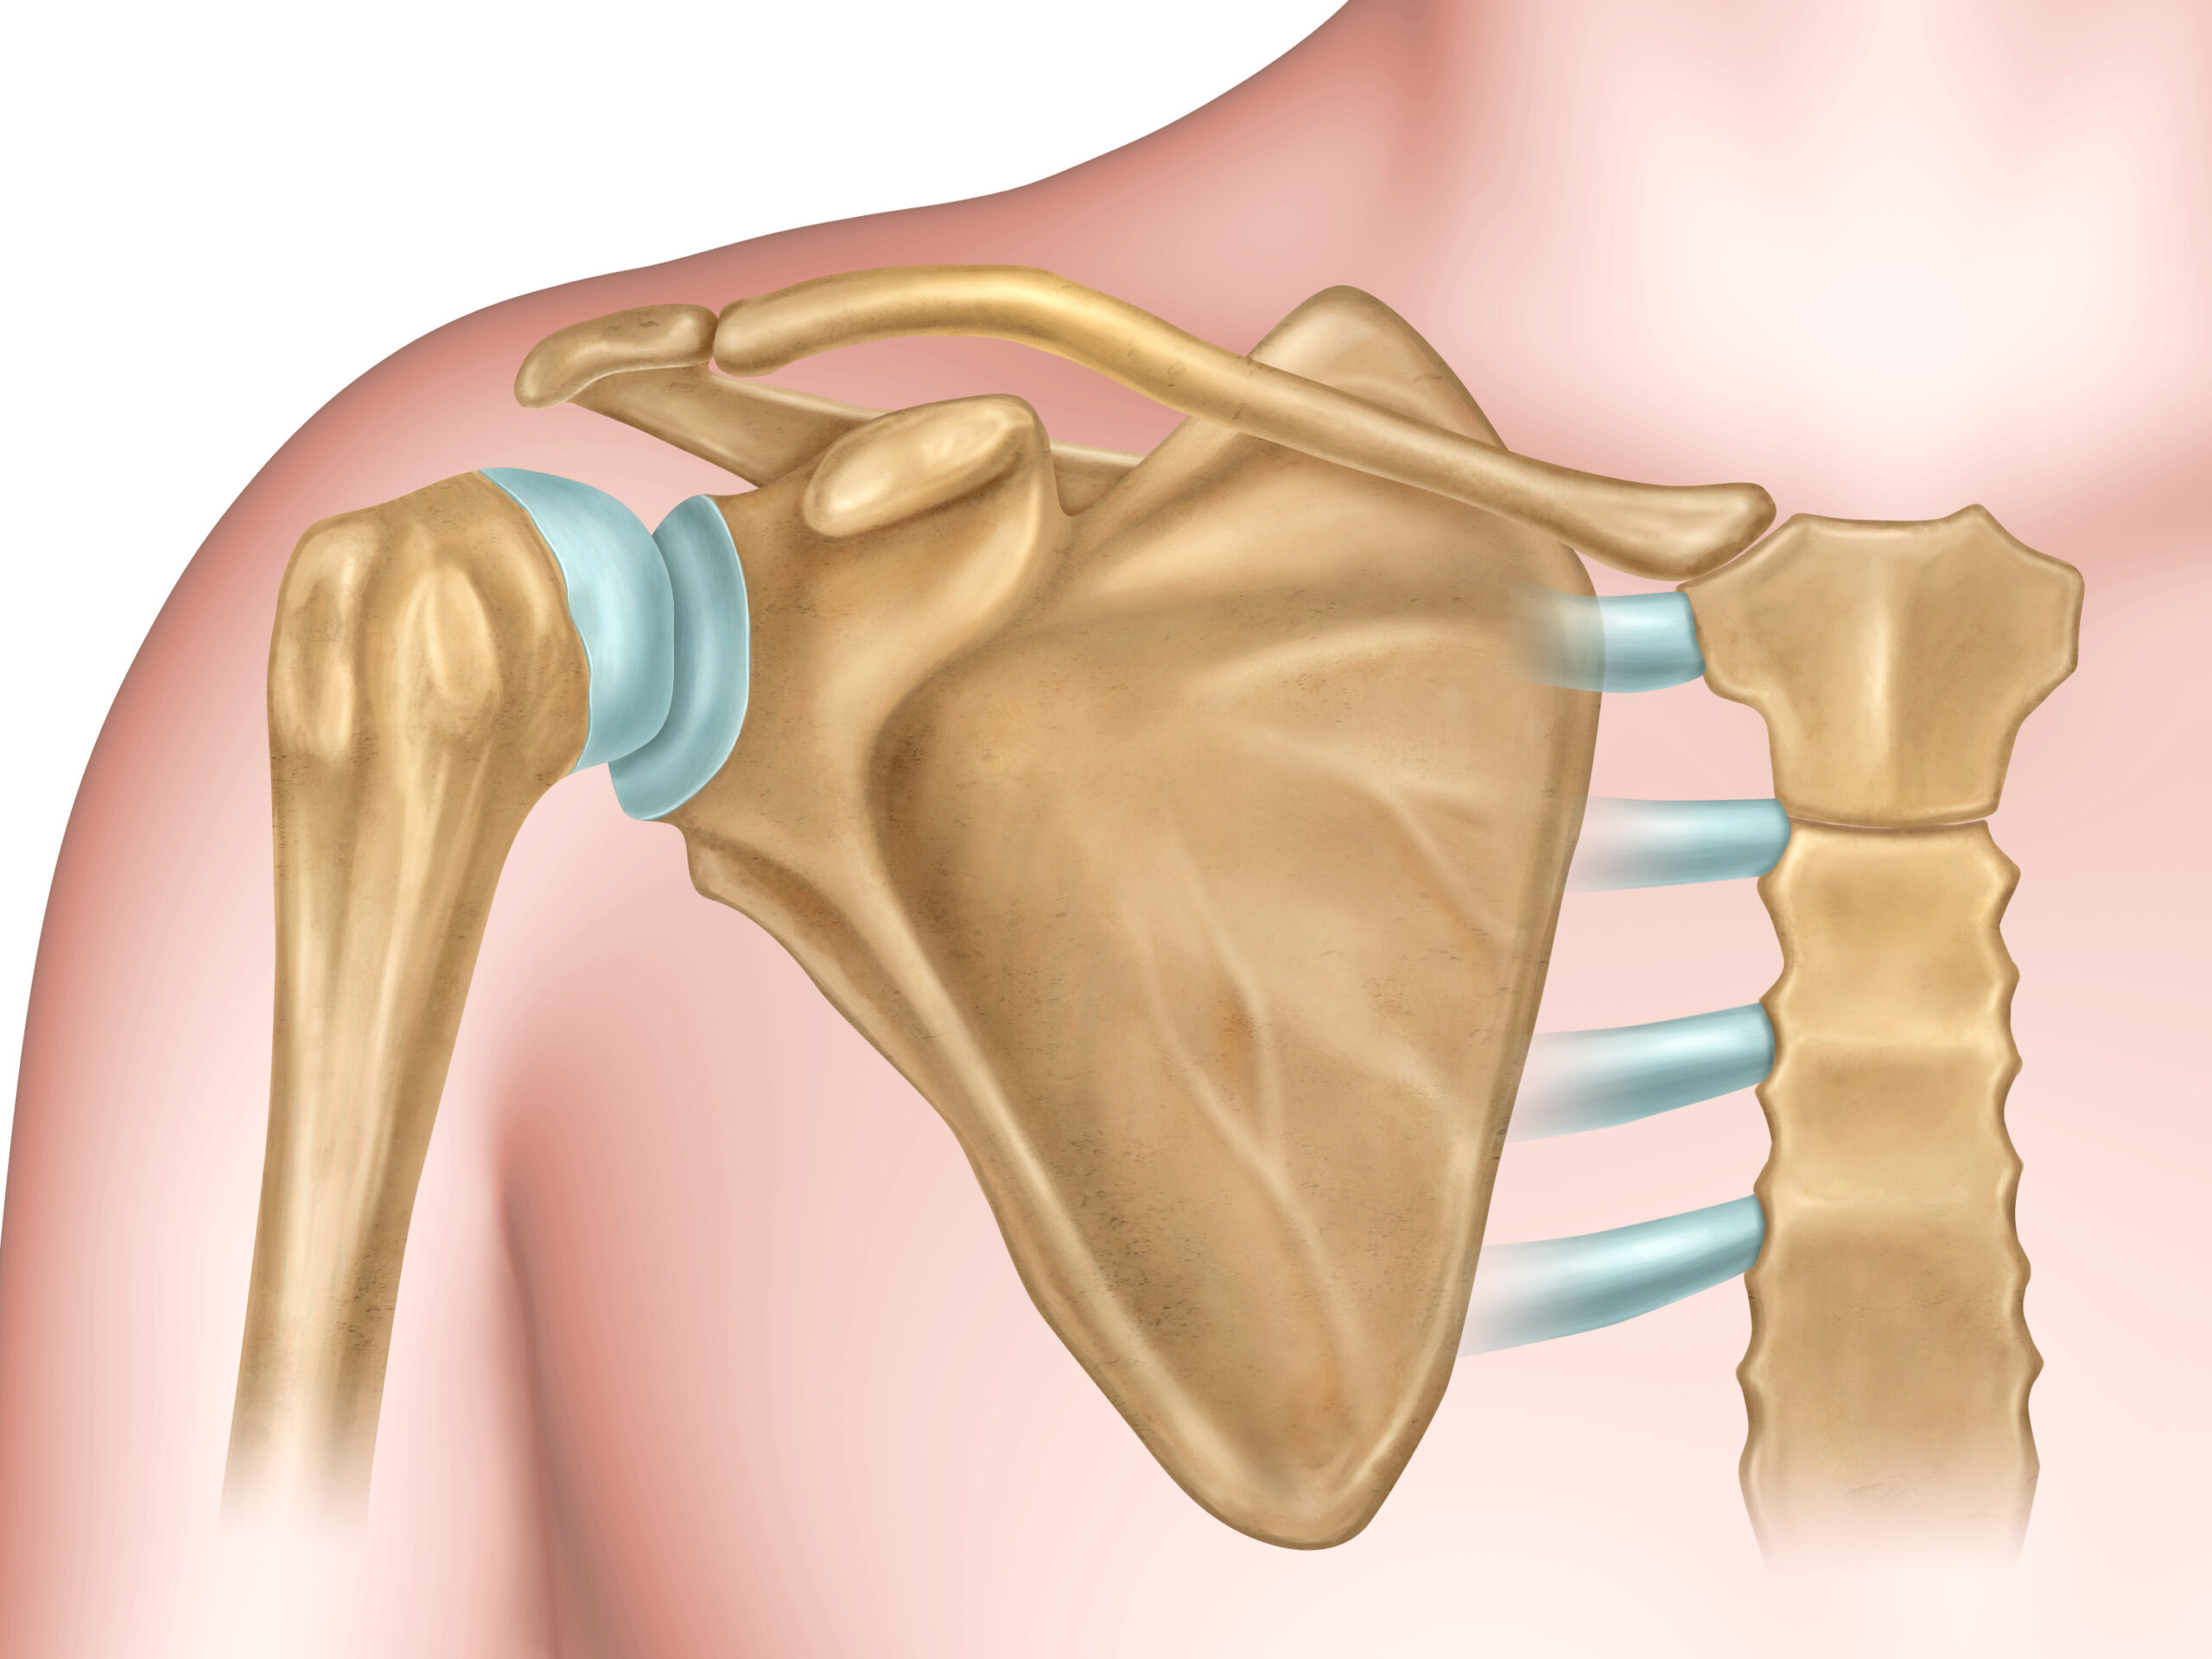 肩の脱臼における手術とリハビリをわかりやすく解説 | 医療法人社団景